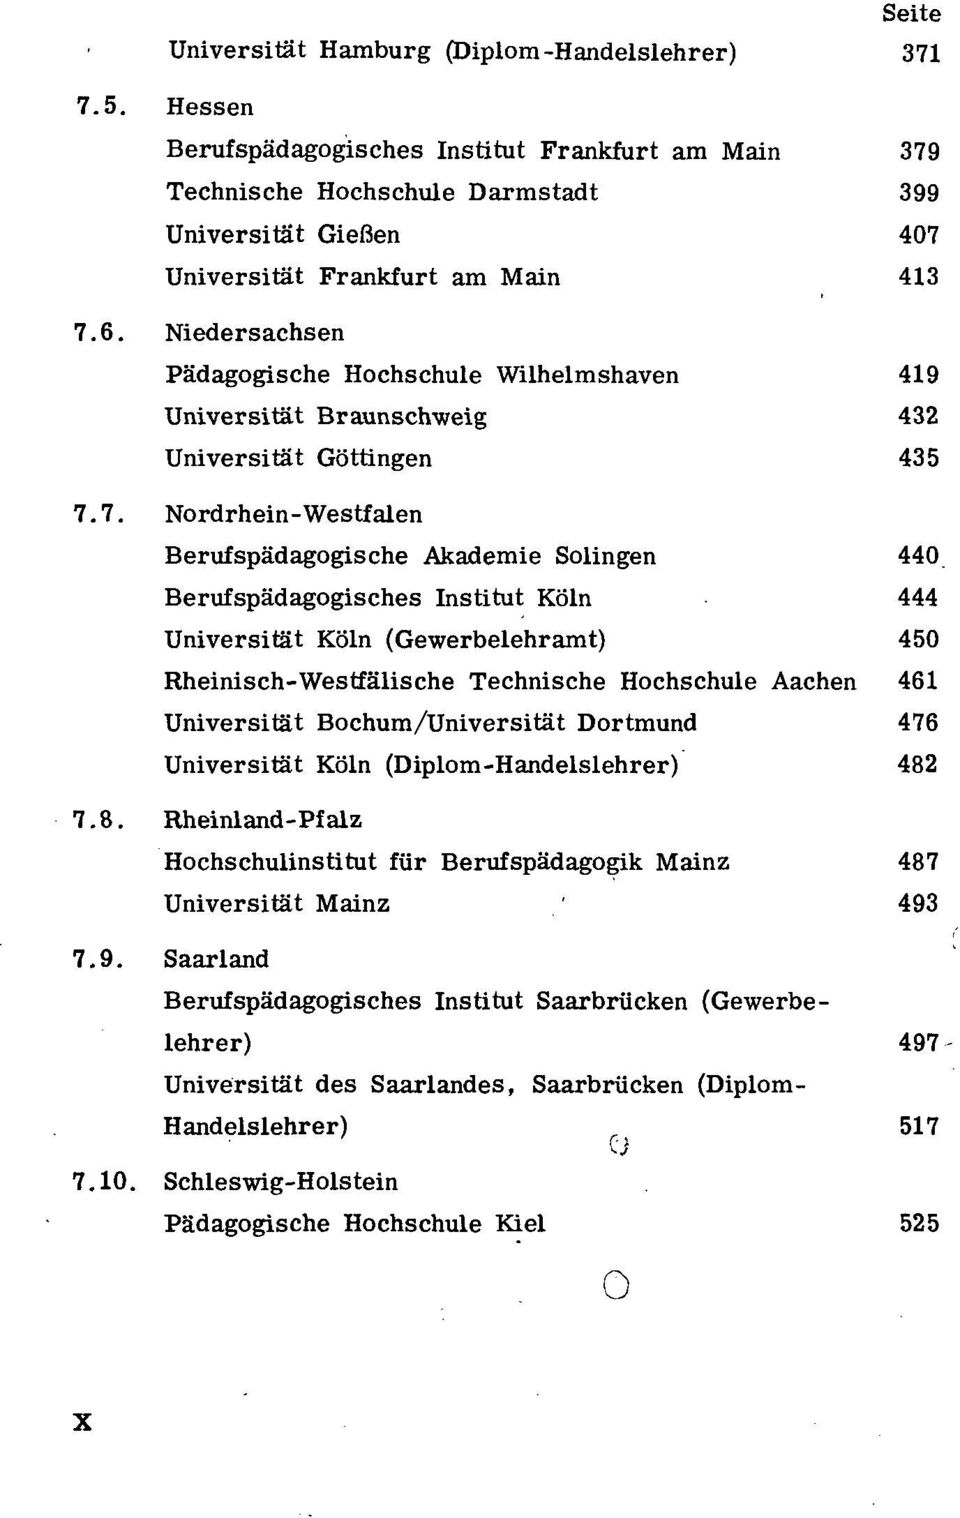 Niedersachsen Pädagogische Hochschule Wilhelmshaven 419 Universität Braunschweig 432 Universität Göttingen 435 7.